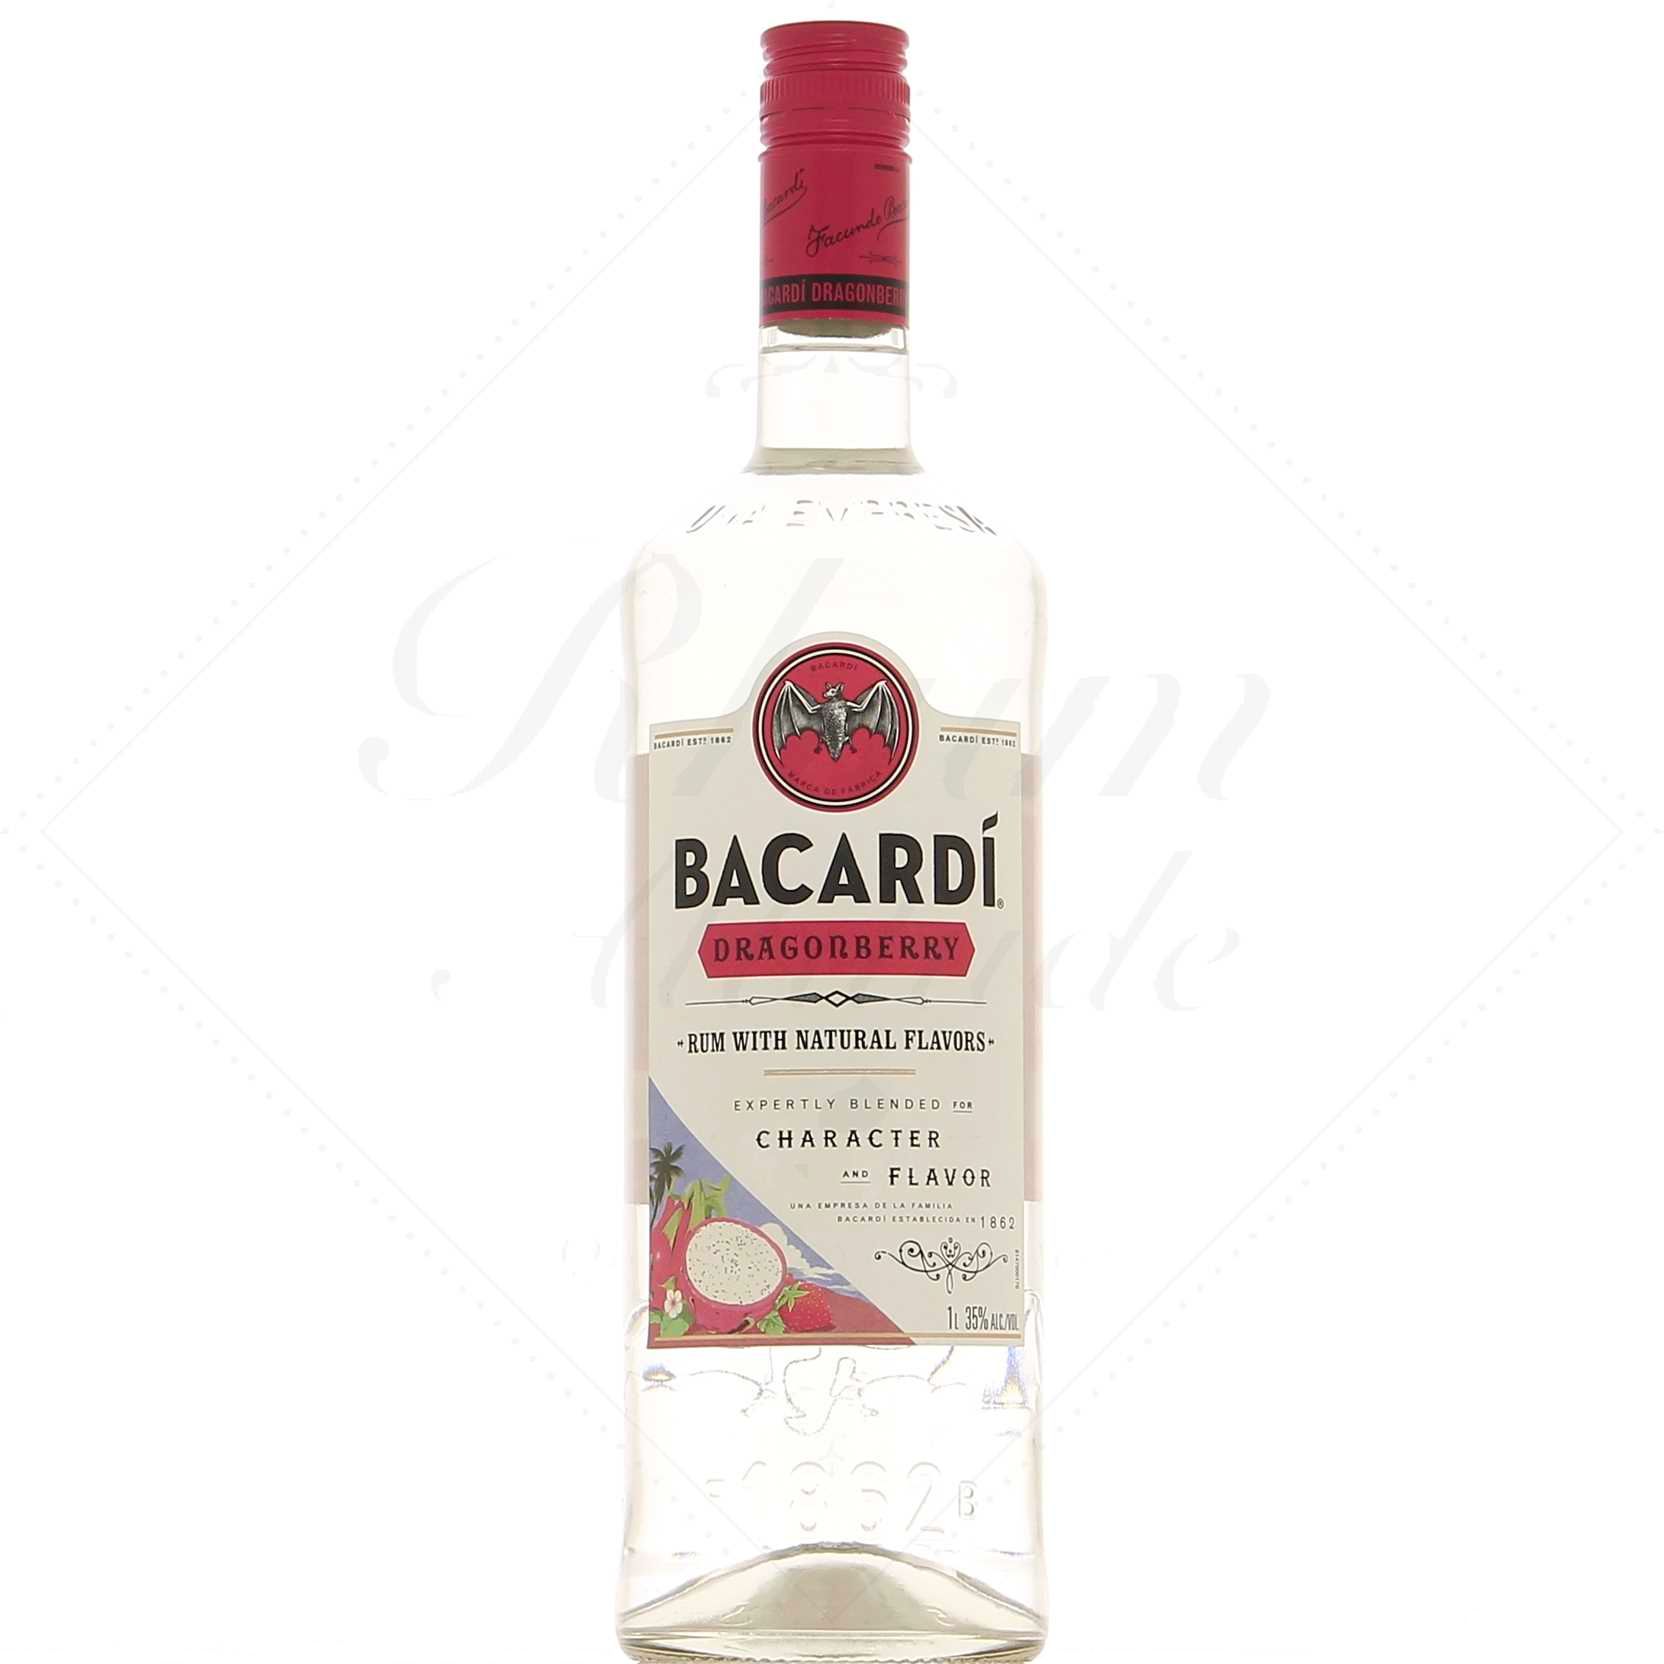 Ром бакарди литр. Бакарди 1 литр. Бакарди 1-129 пленка. Bacardi 1 литр carte Blanche. Bacardi Dragon Fruit.